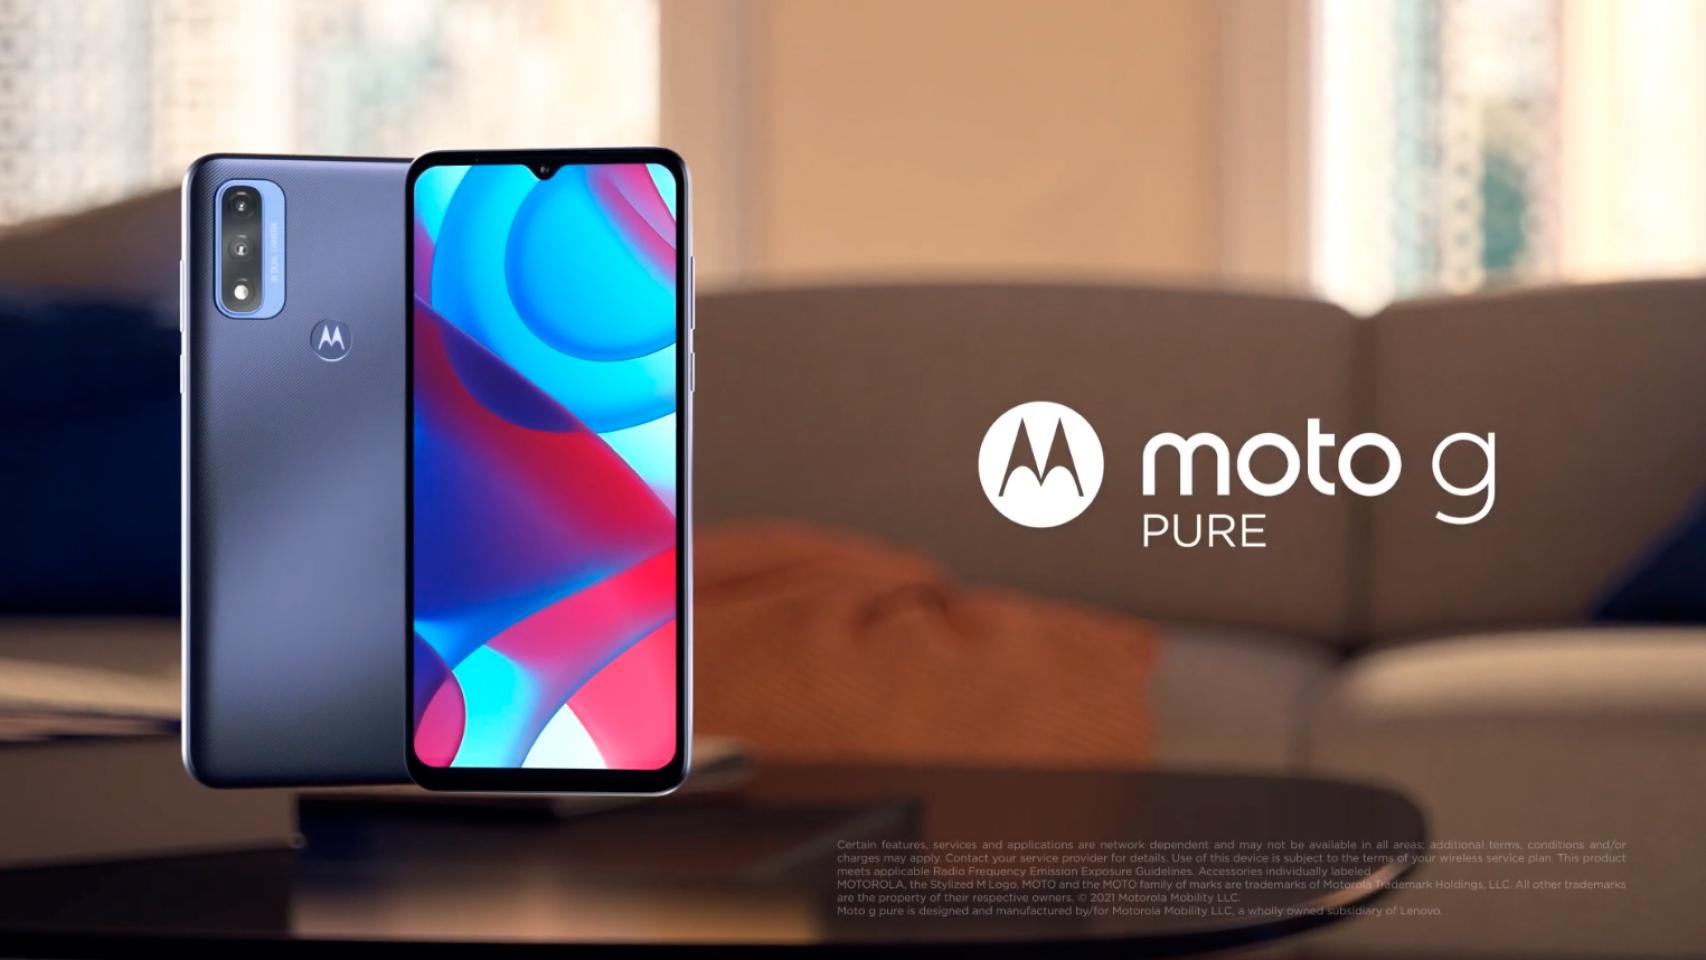 Nuevo Motorola Moto G Pure: características, precios